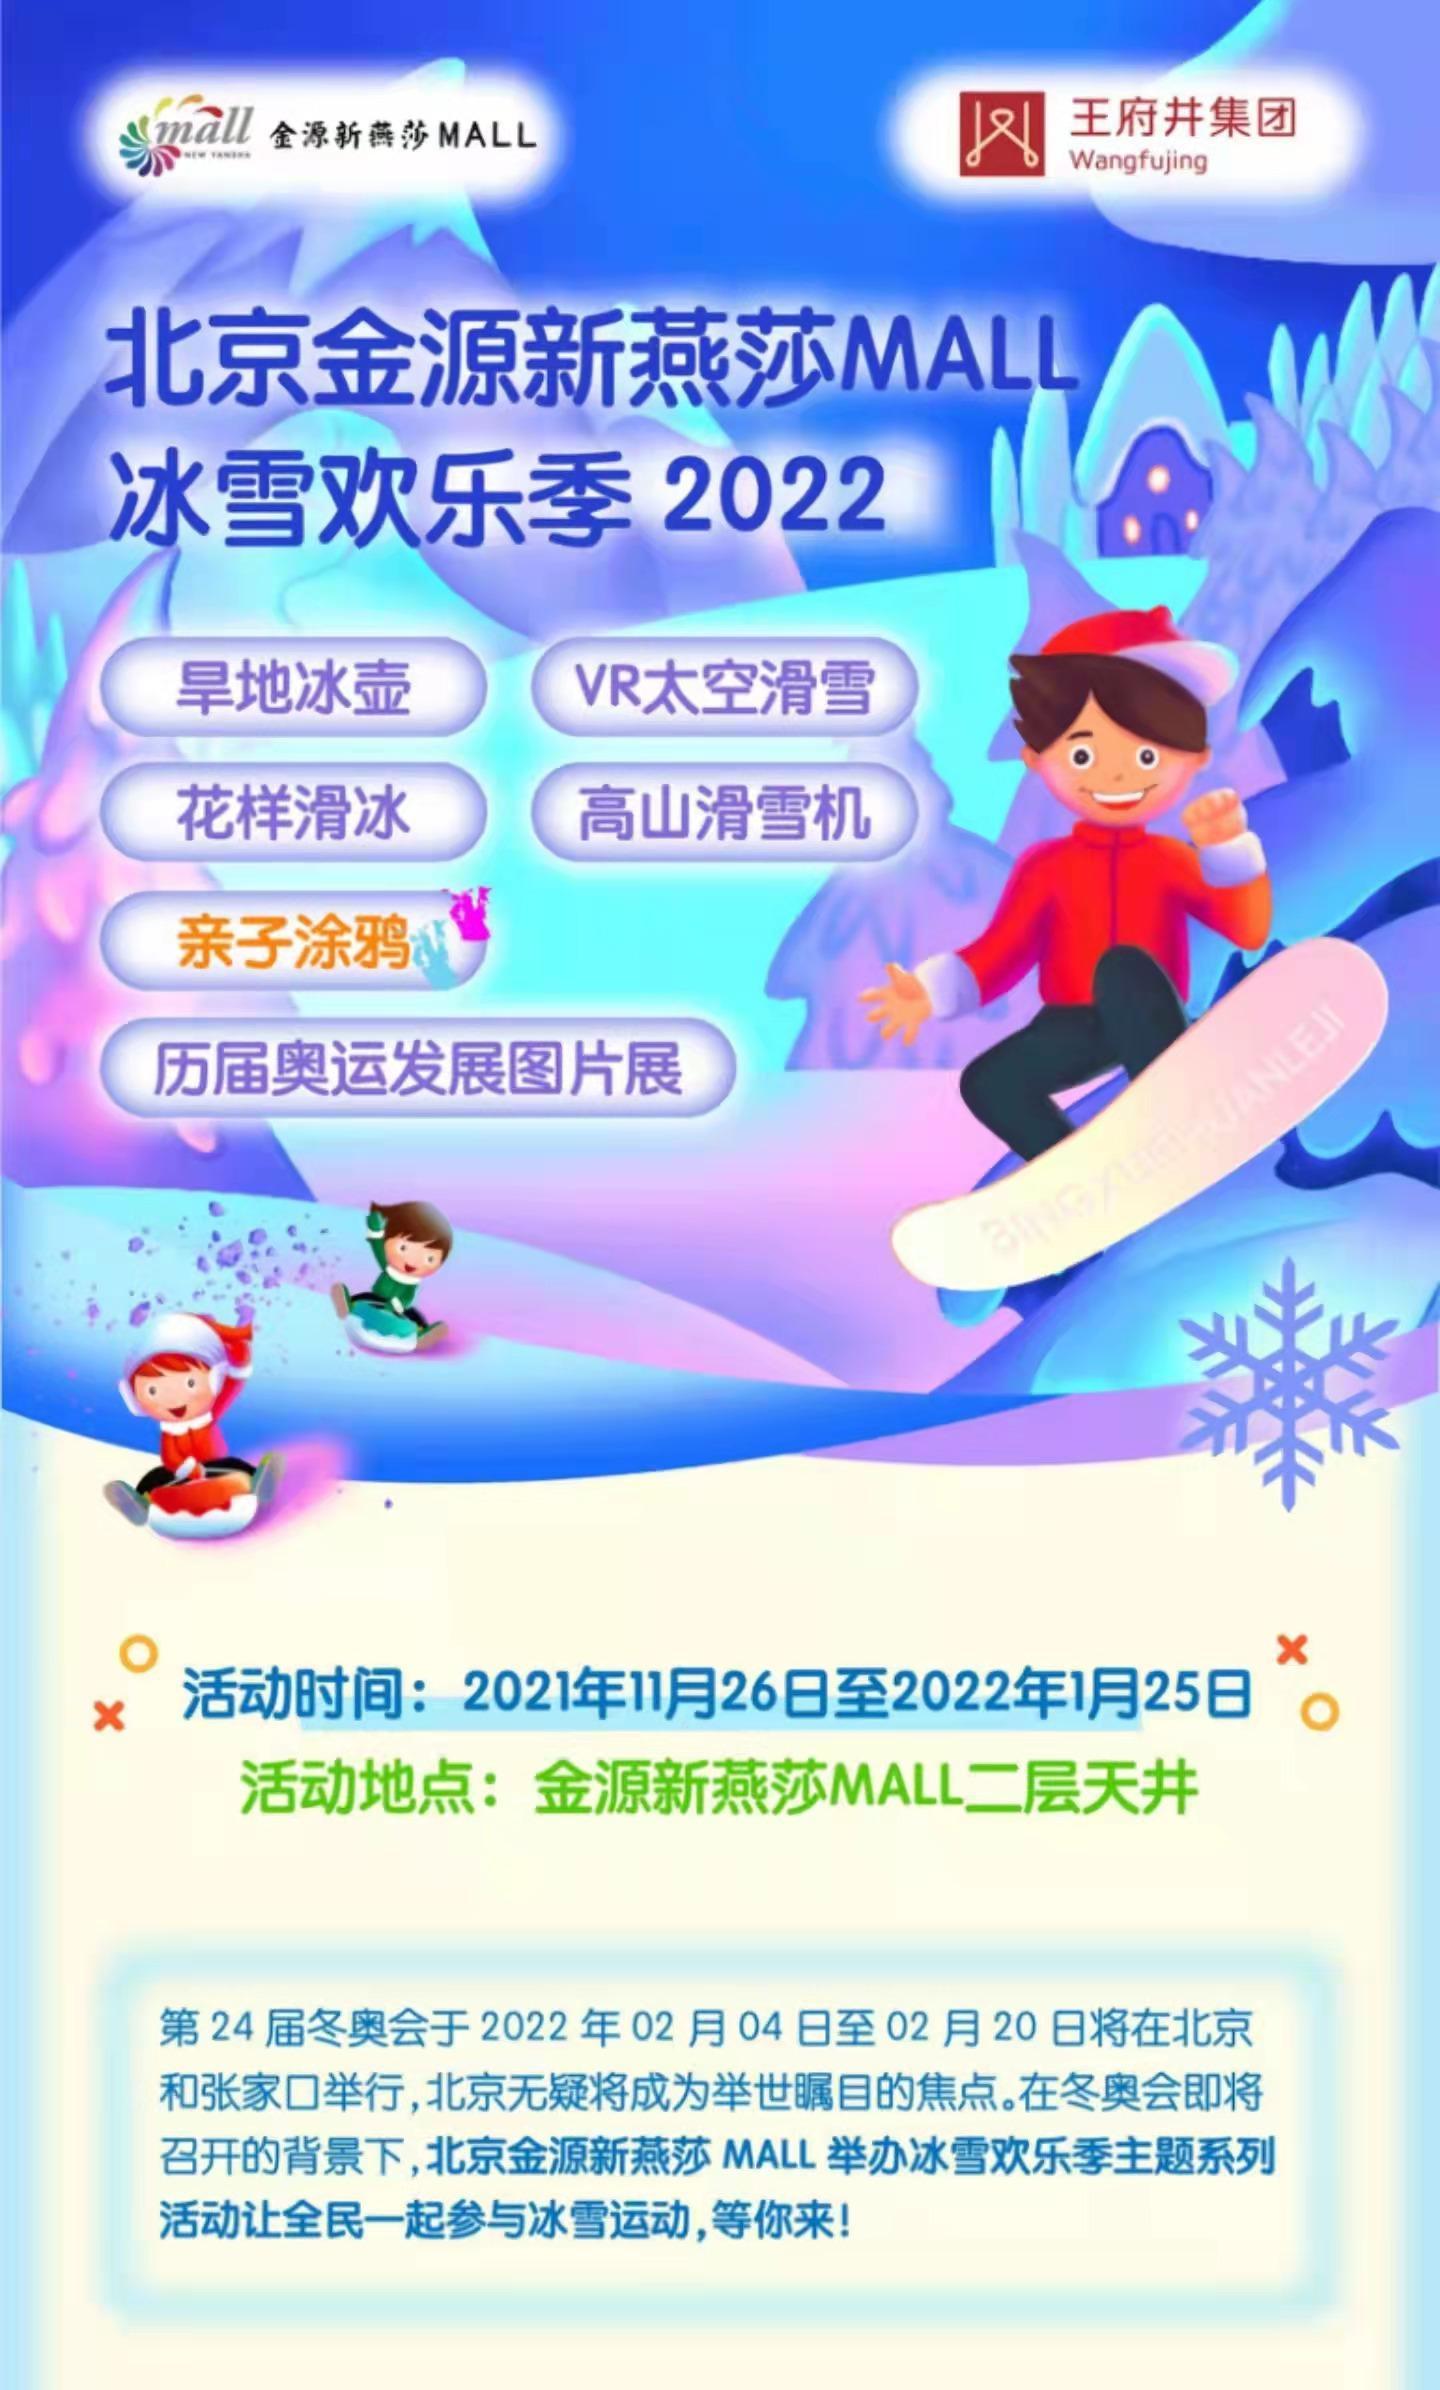 北京金源新燕莎mall冰雪欢乐季2022